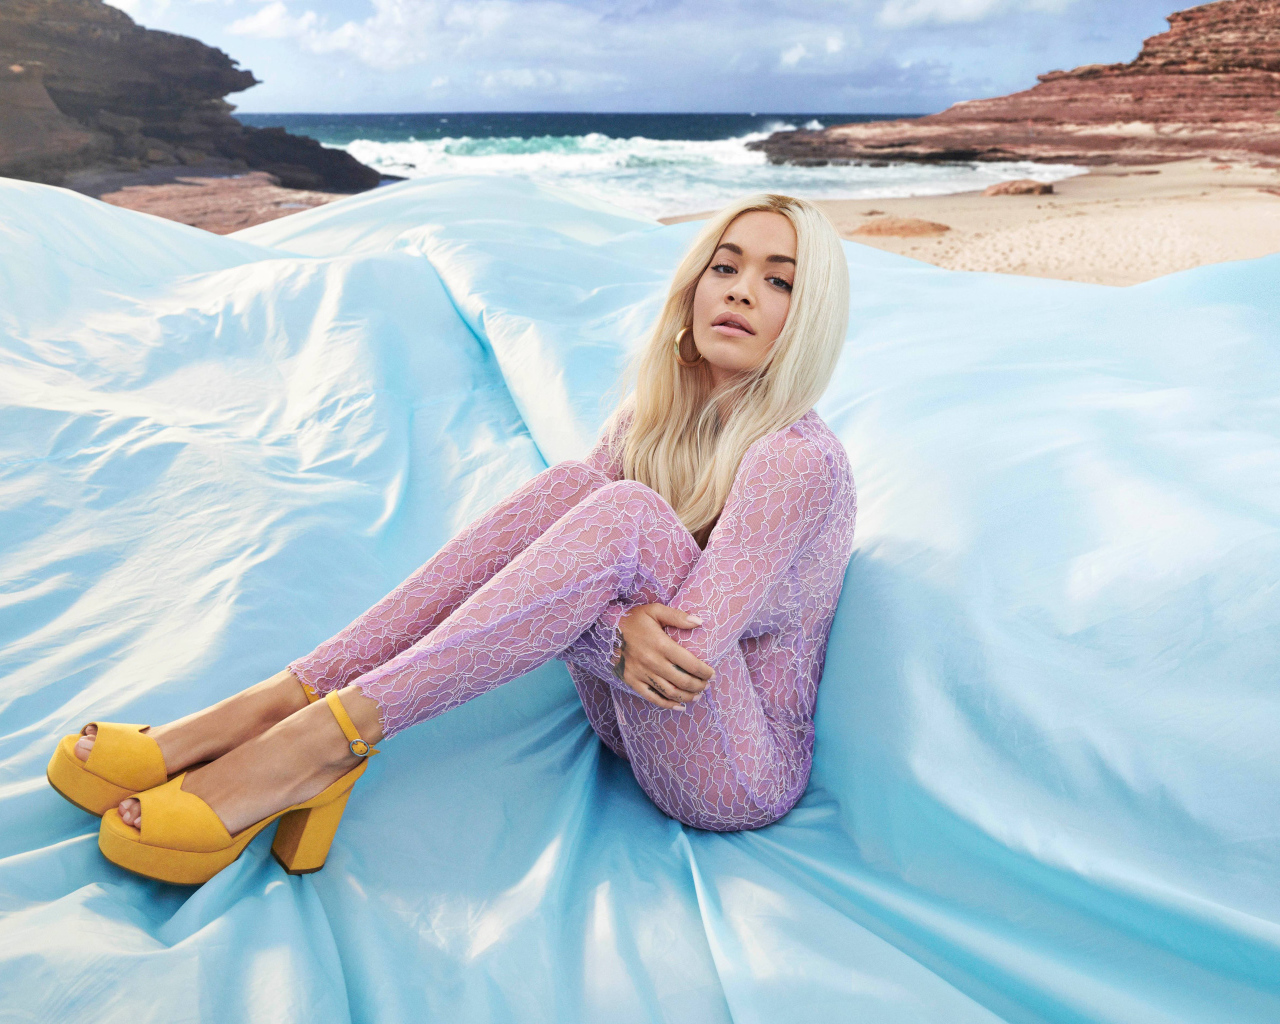 Певица Рита Ора сидит на голубом покрывале у моря